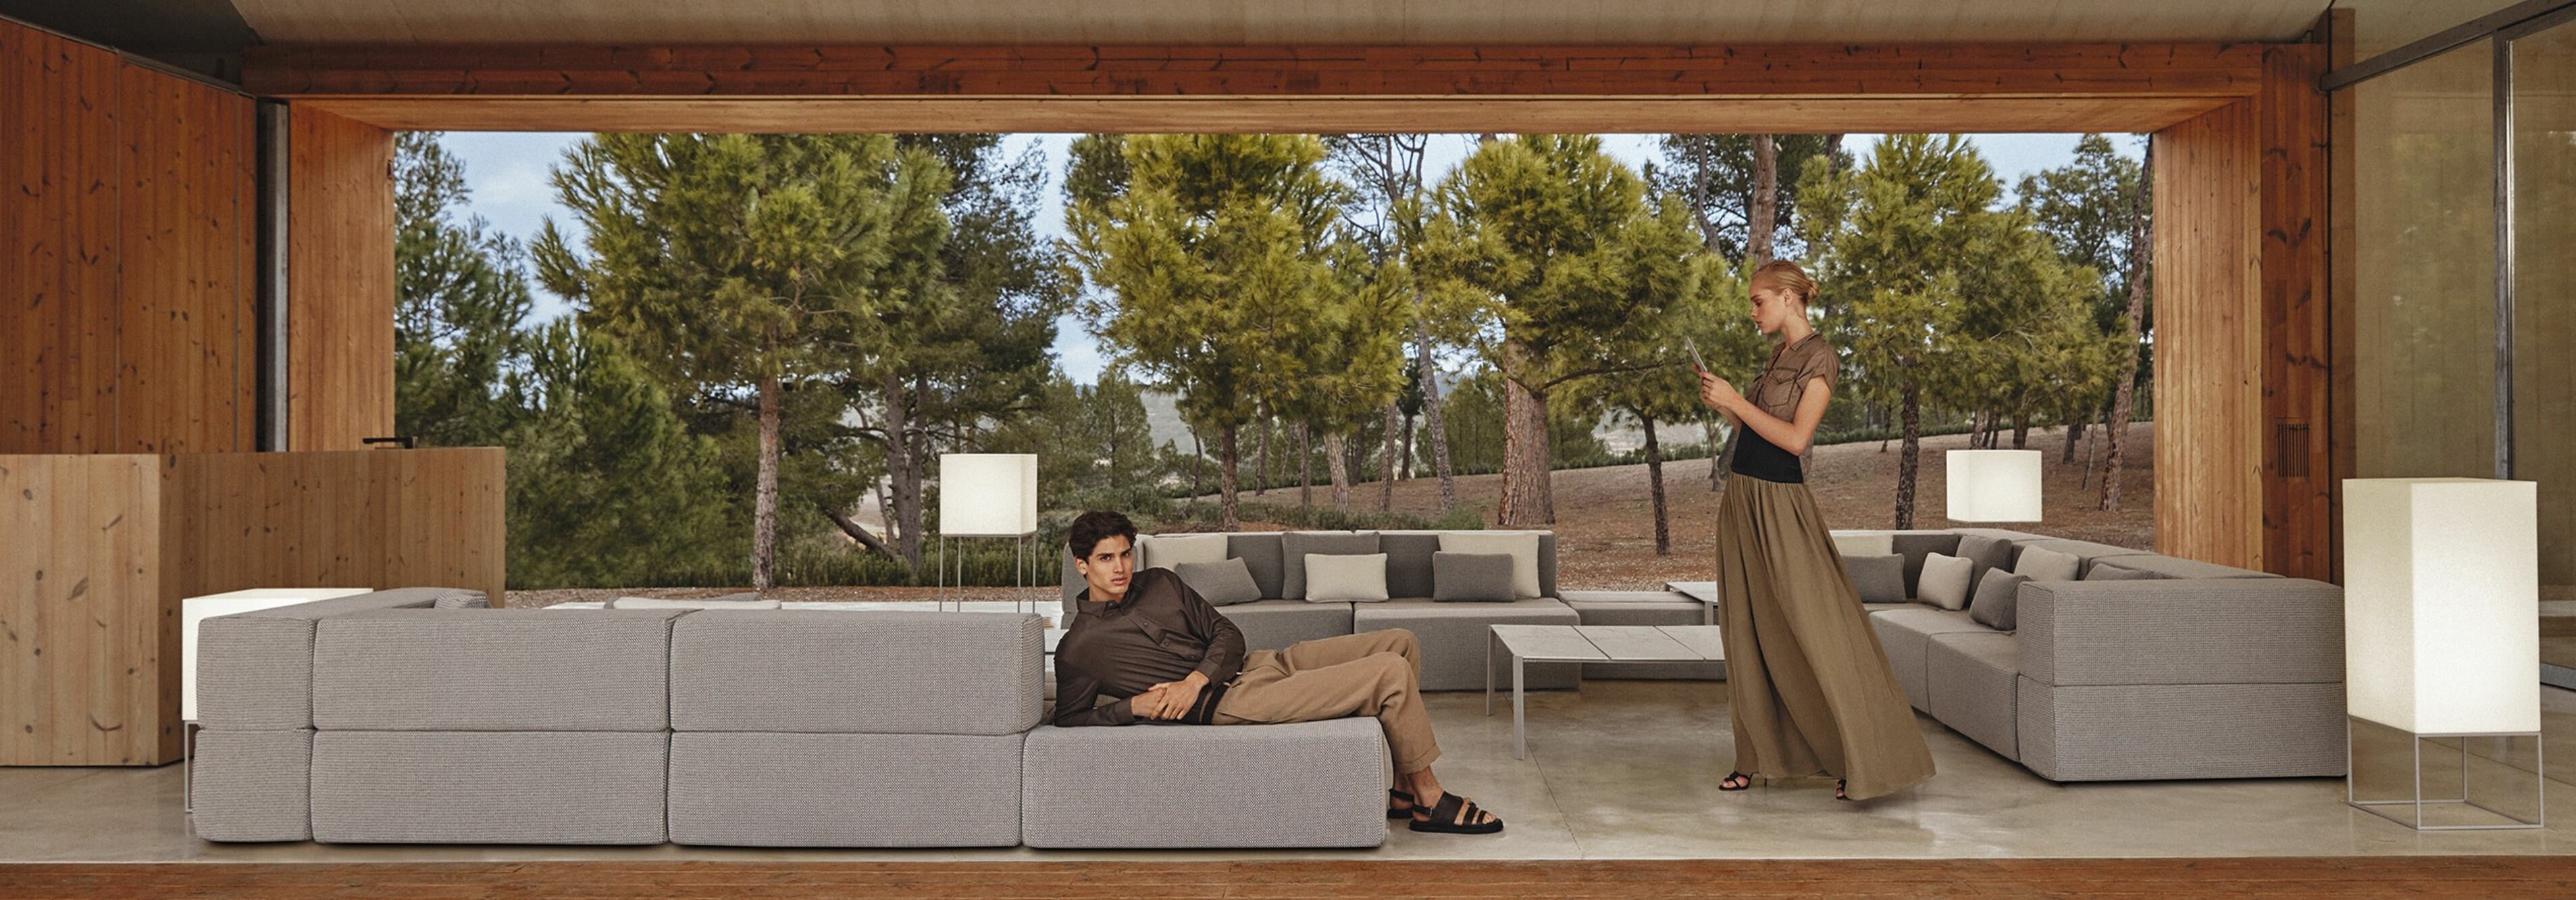 Luxus Lounge Möbel Graf Wohnideen Terrasse